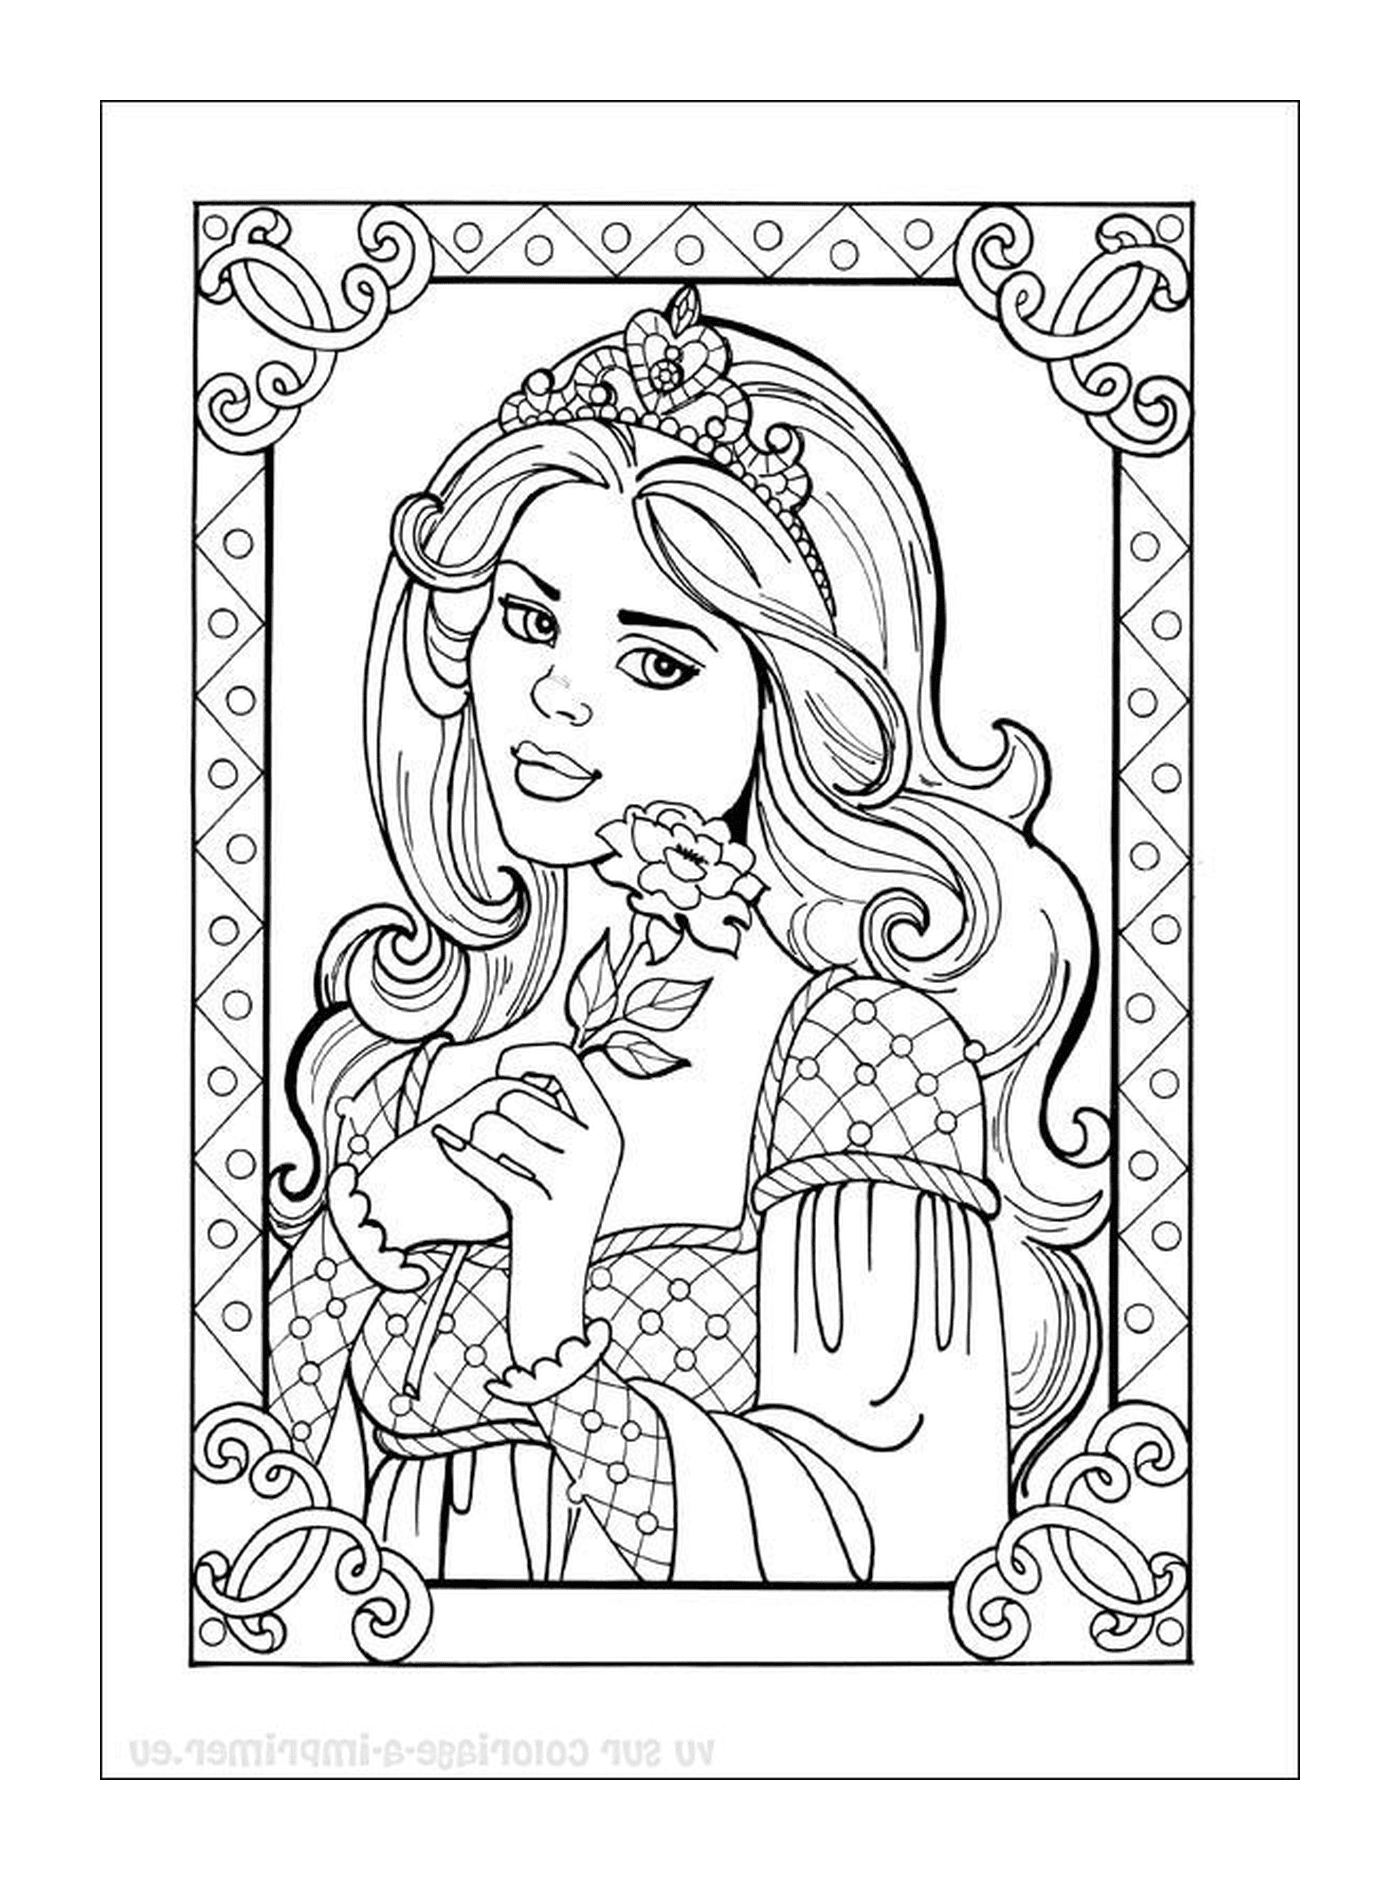  Princesa Disney, una princesa sosteniendo una rosa 